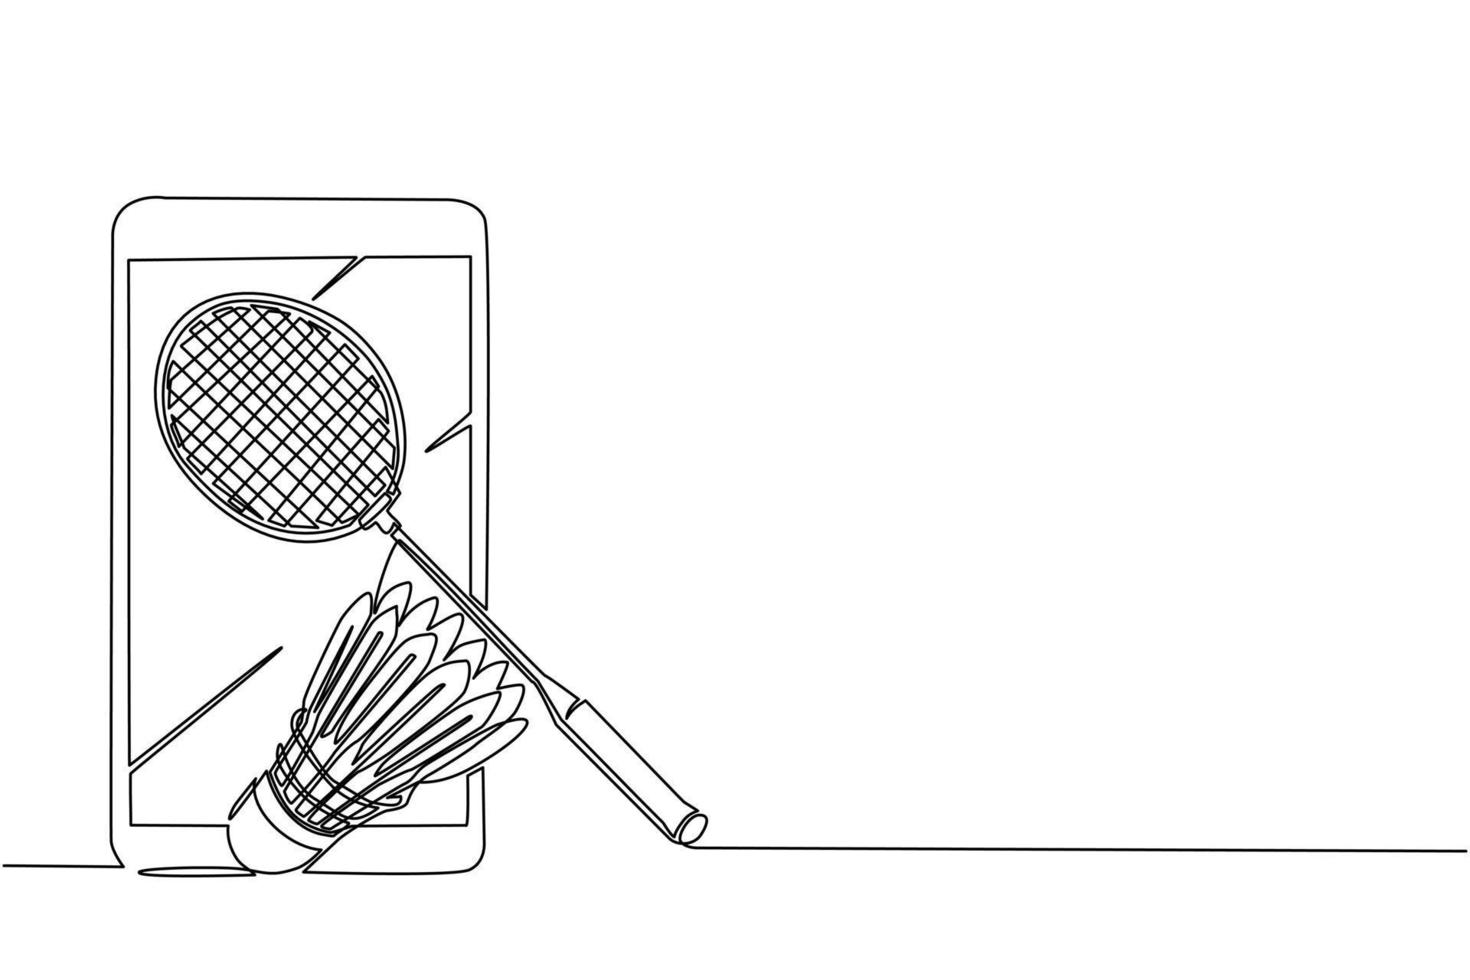 kontinuierliche einzeilige zeichnung von smartphone, badmintonschläger und federball. Ausrüstungen für den Badmintonspielsport lokalisiert auf Hintergrund im flachen Design. einzeiliges zeichnen design vektorgrafik illustration vektor